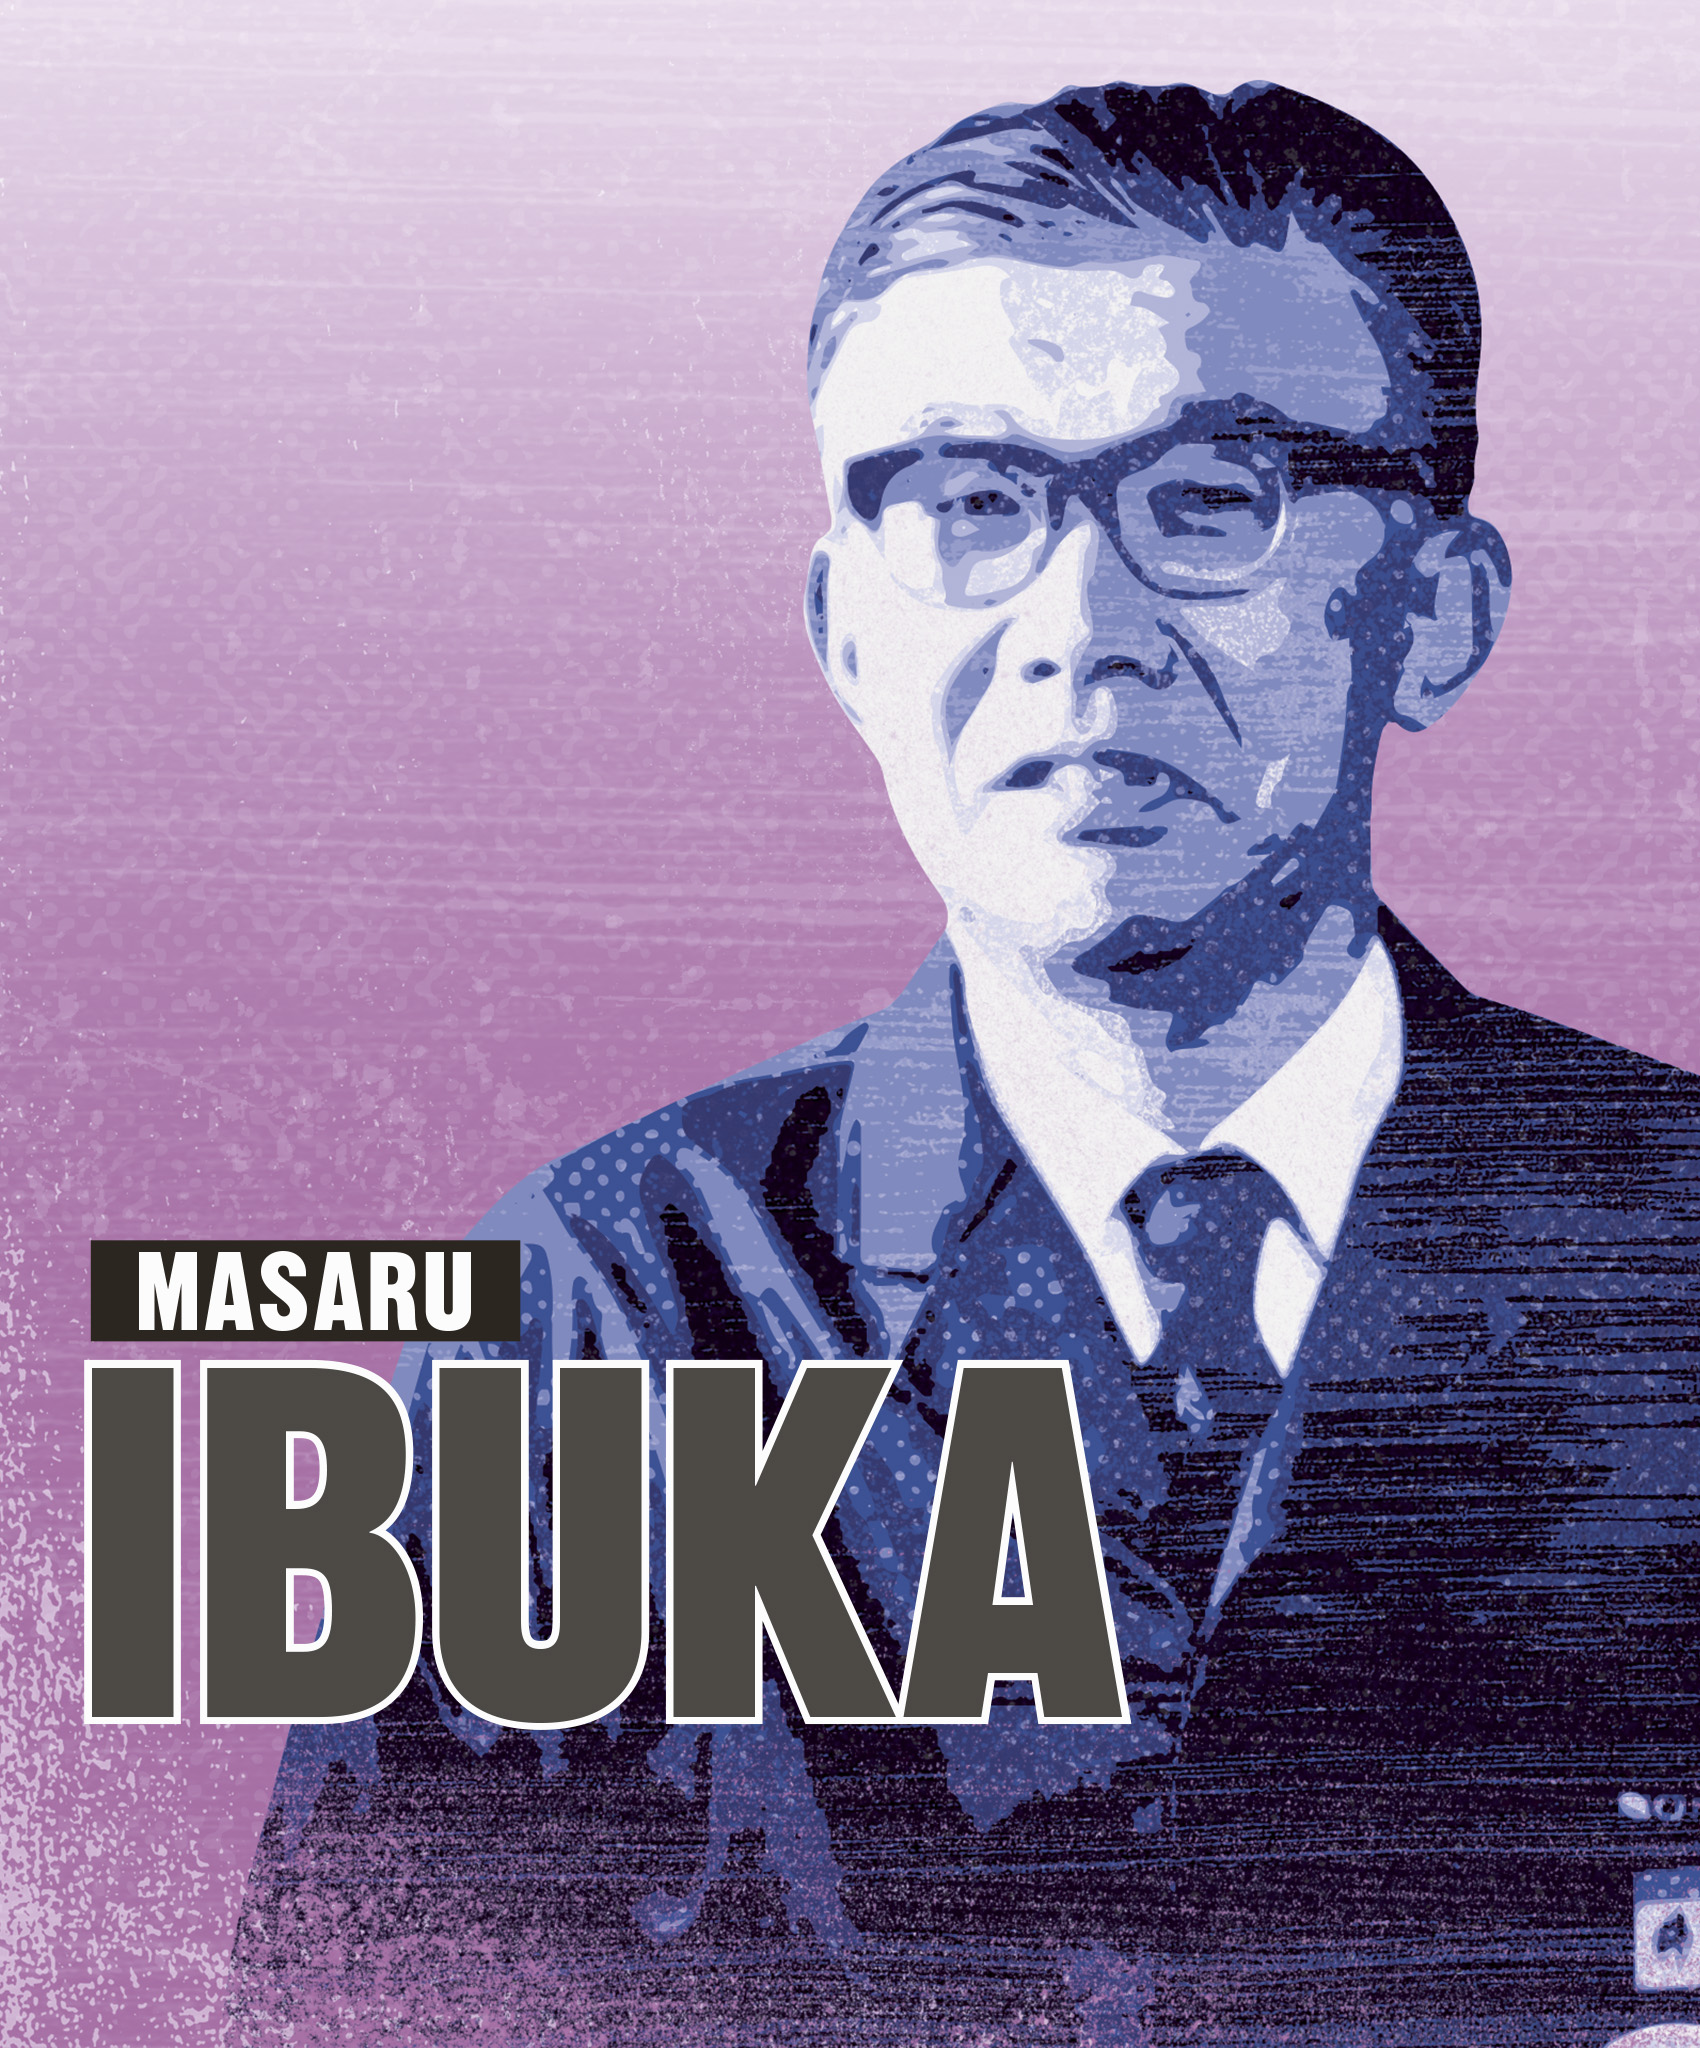 Masaru Ibuka and Akio Morita - Entrepreneurs Who Changed History [Book]